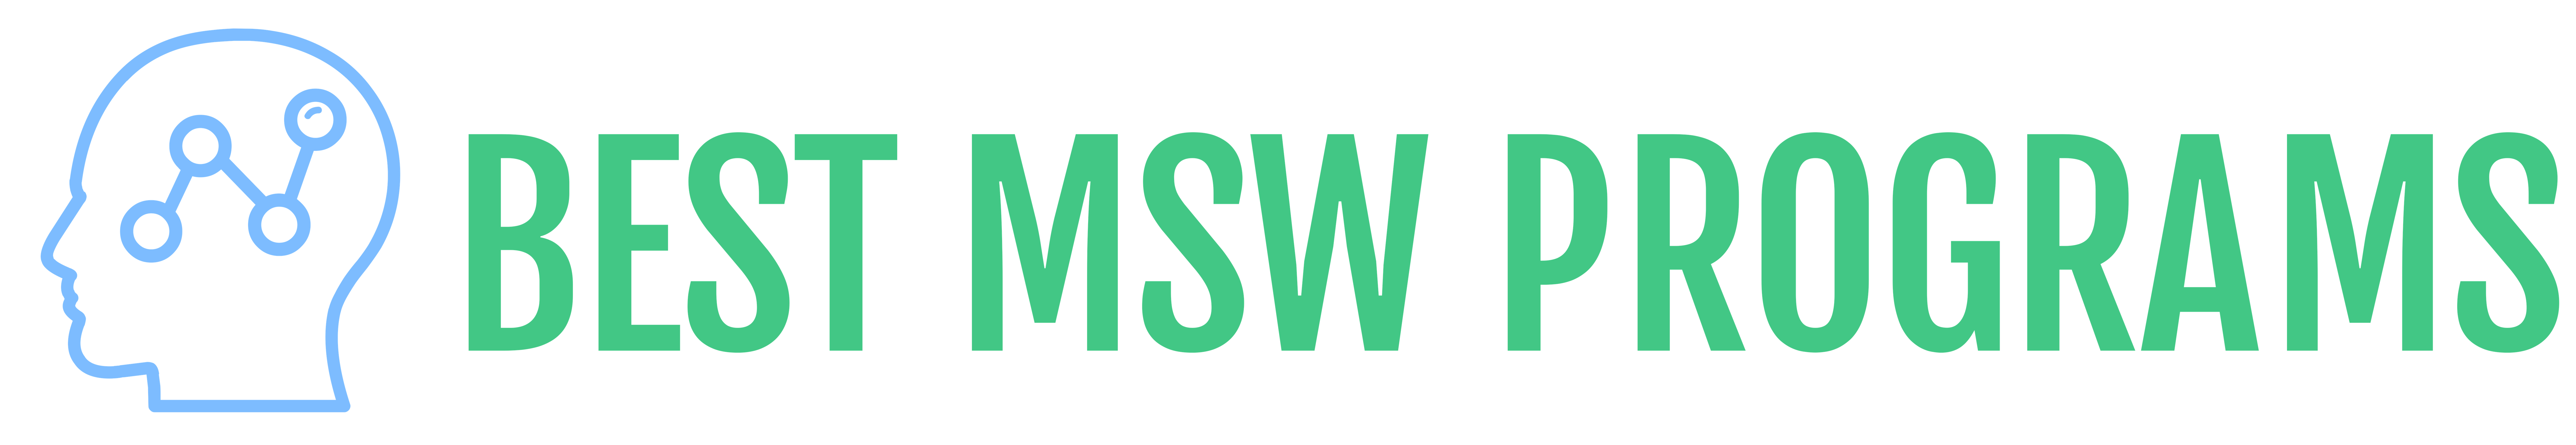 Best MSW Programs